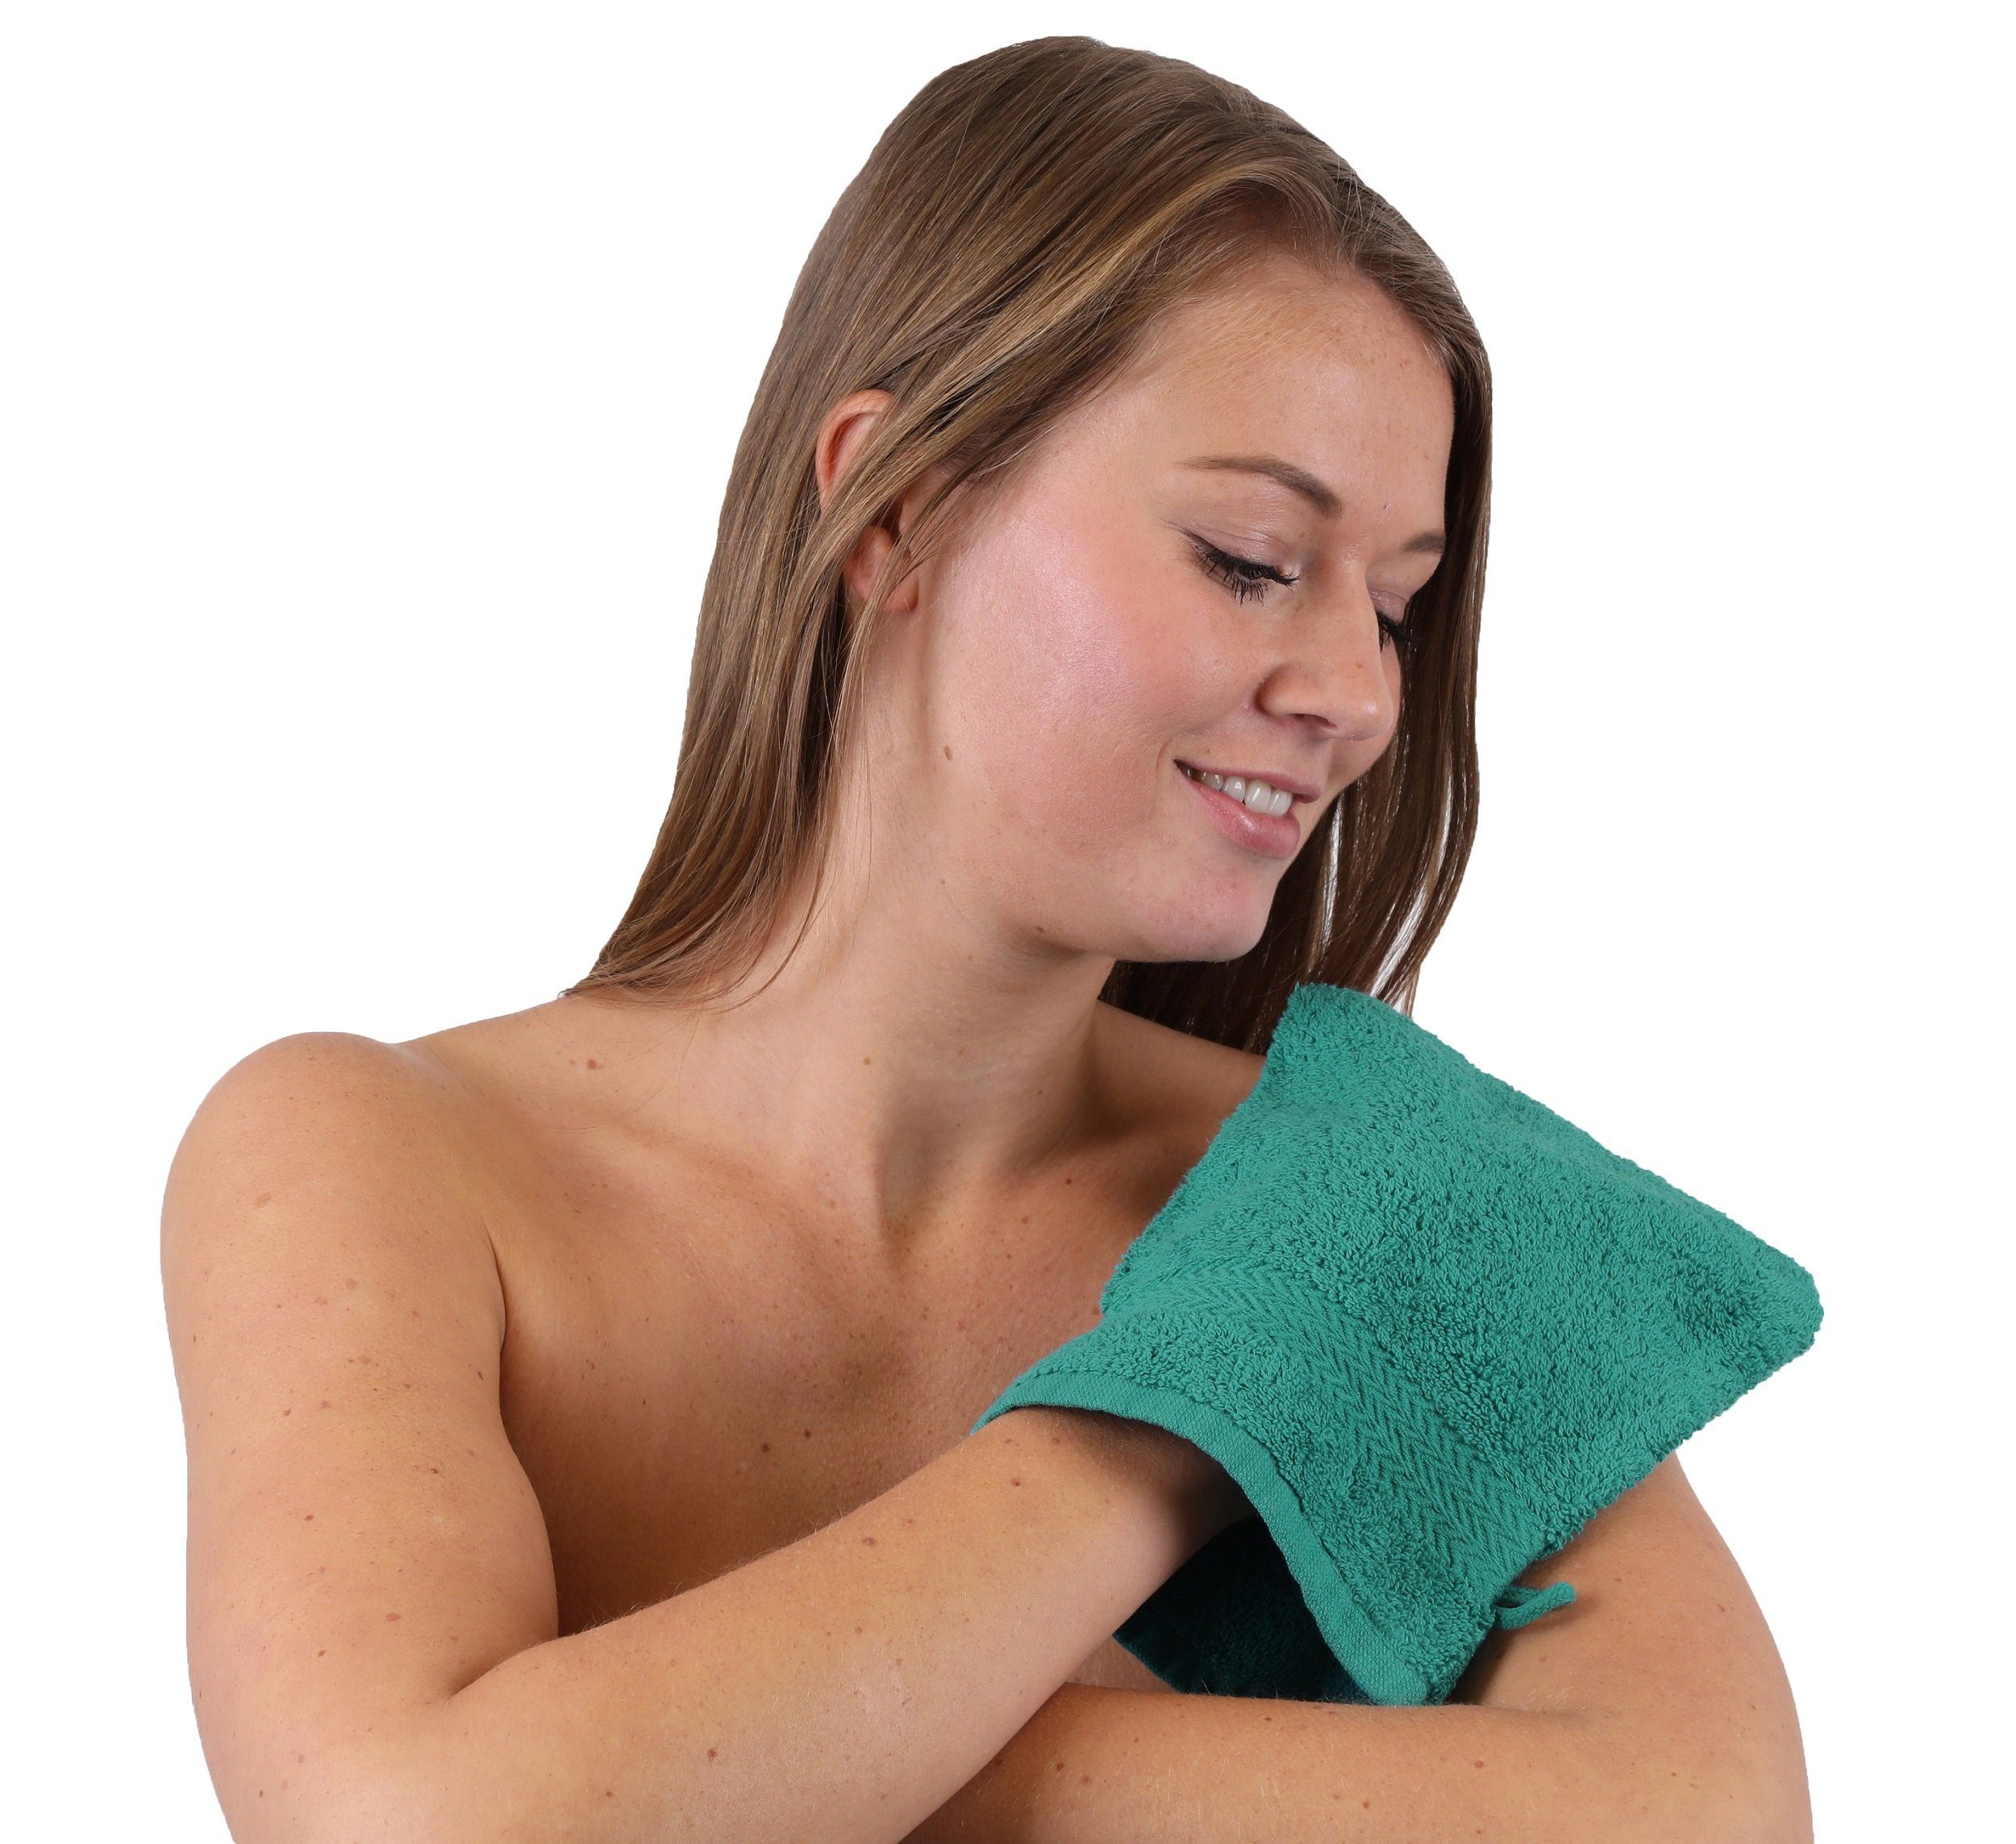 Farbe Betz 10 Stück Waschhandschuhe smaragdgrün und Waschlappen 100% 16x21 Premium Set cm Baumwolle Waschhandschuh lila